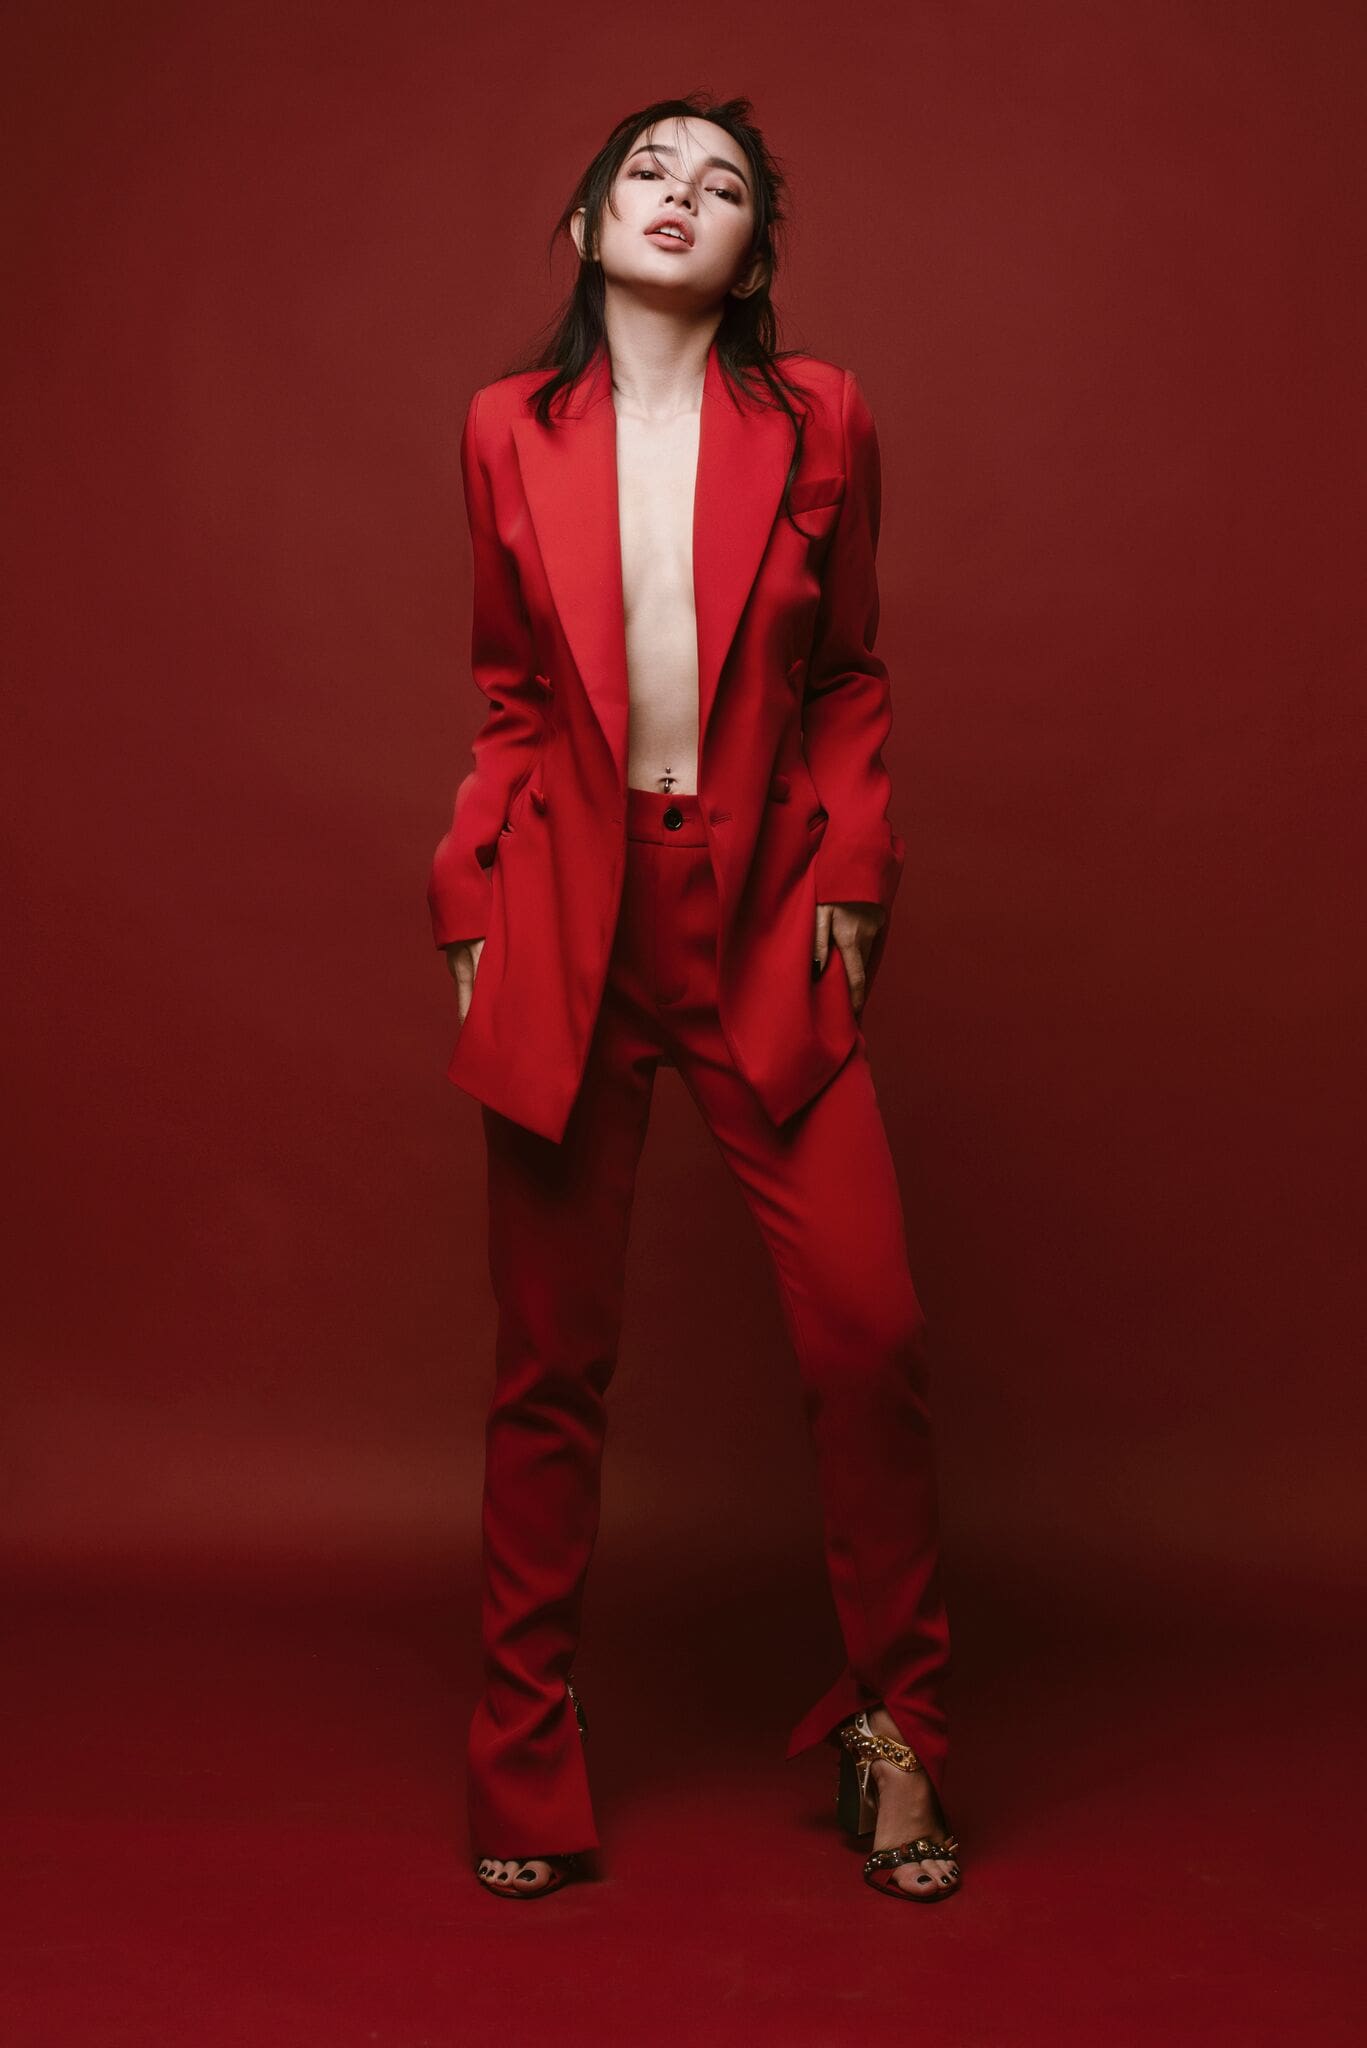 Một bộ suit đỏ rực là gợi ý tuyệt vời cho ngày Tết. Để trang phục mang tính ứng dụng cao, thay vì 'thả rông' như Châu Bùi, nàng hãy mặc bên trong một chiếc áo ôm sát, vừa để giữ ấm vừa lịch sự